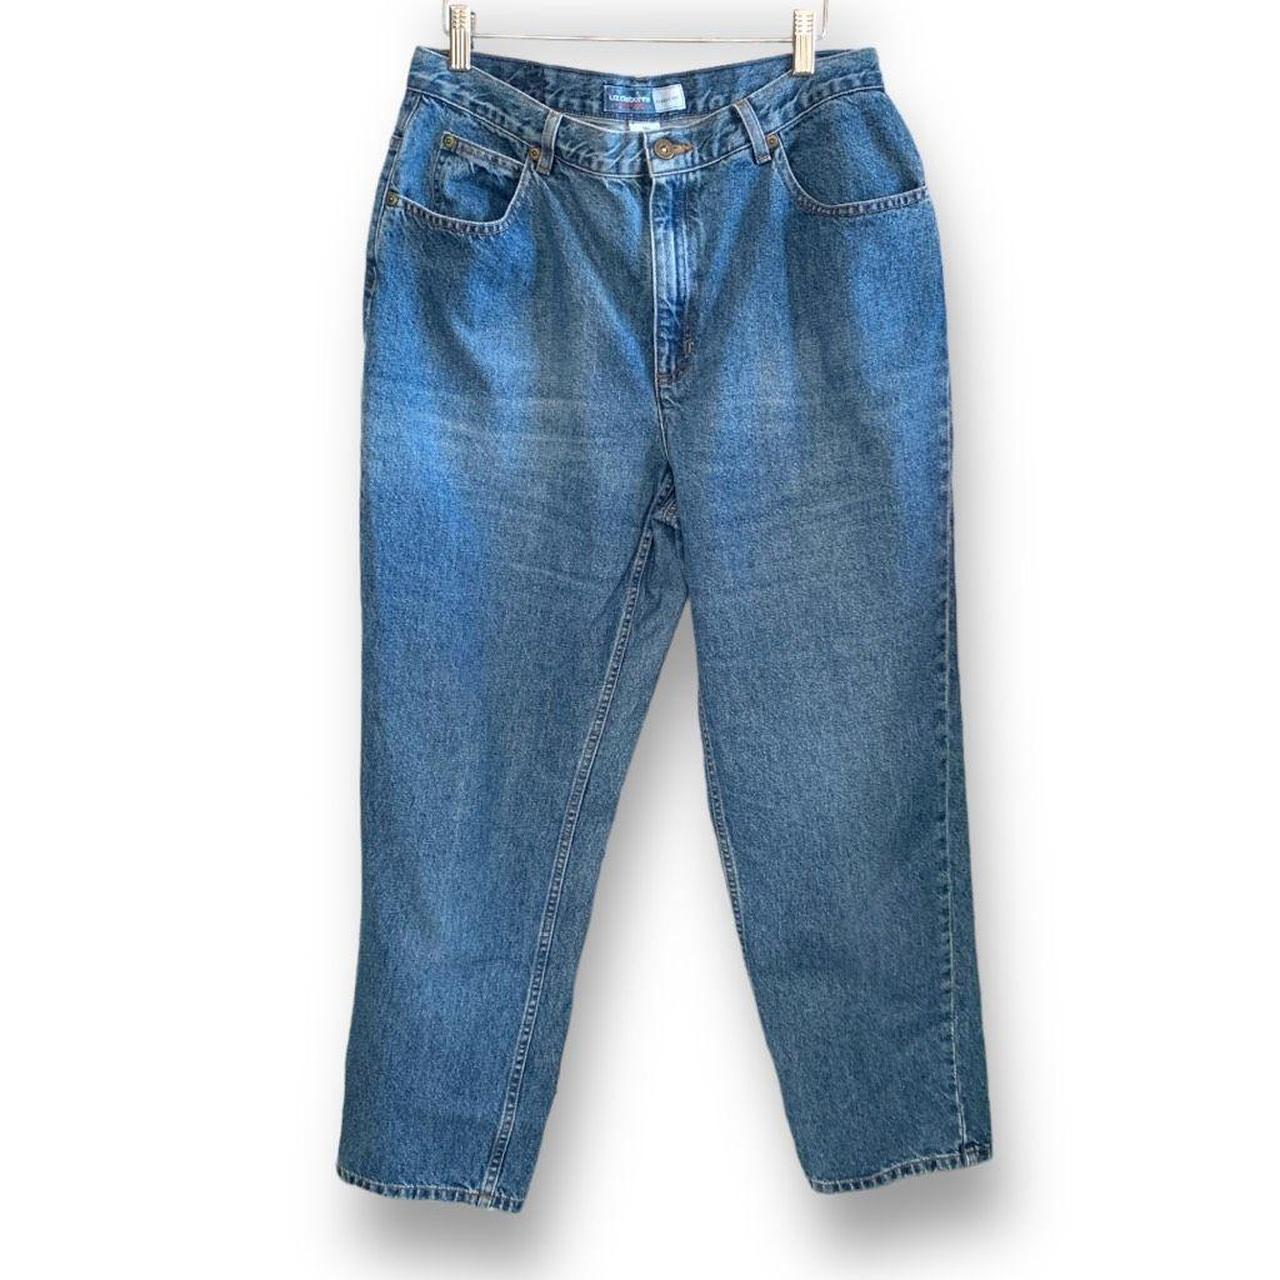 90s Liz Claiborne Jeans Vintage Size 14 Short... - Depop